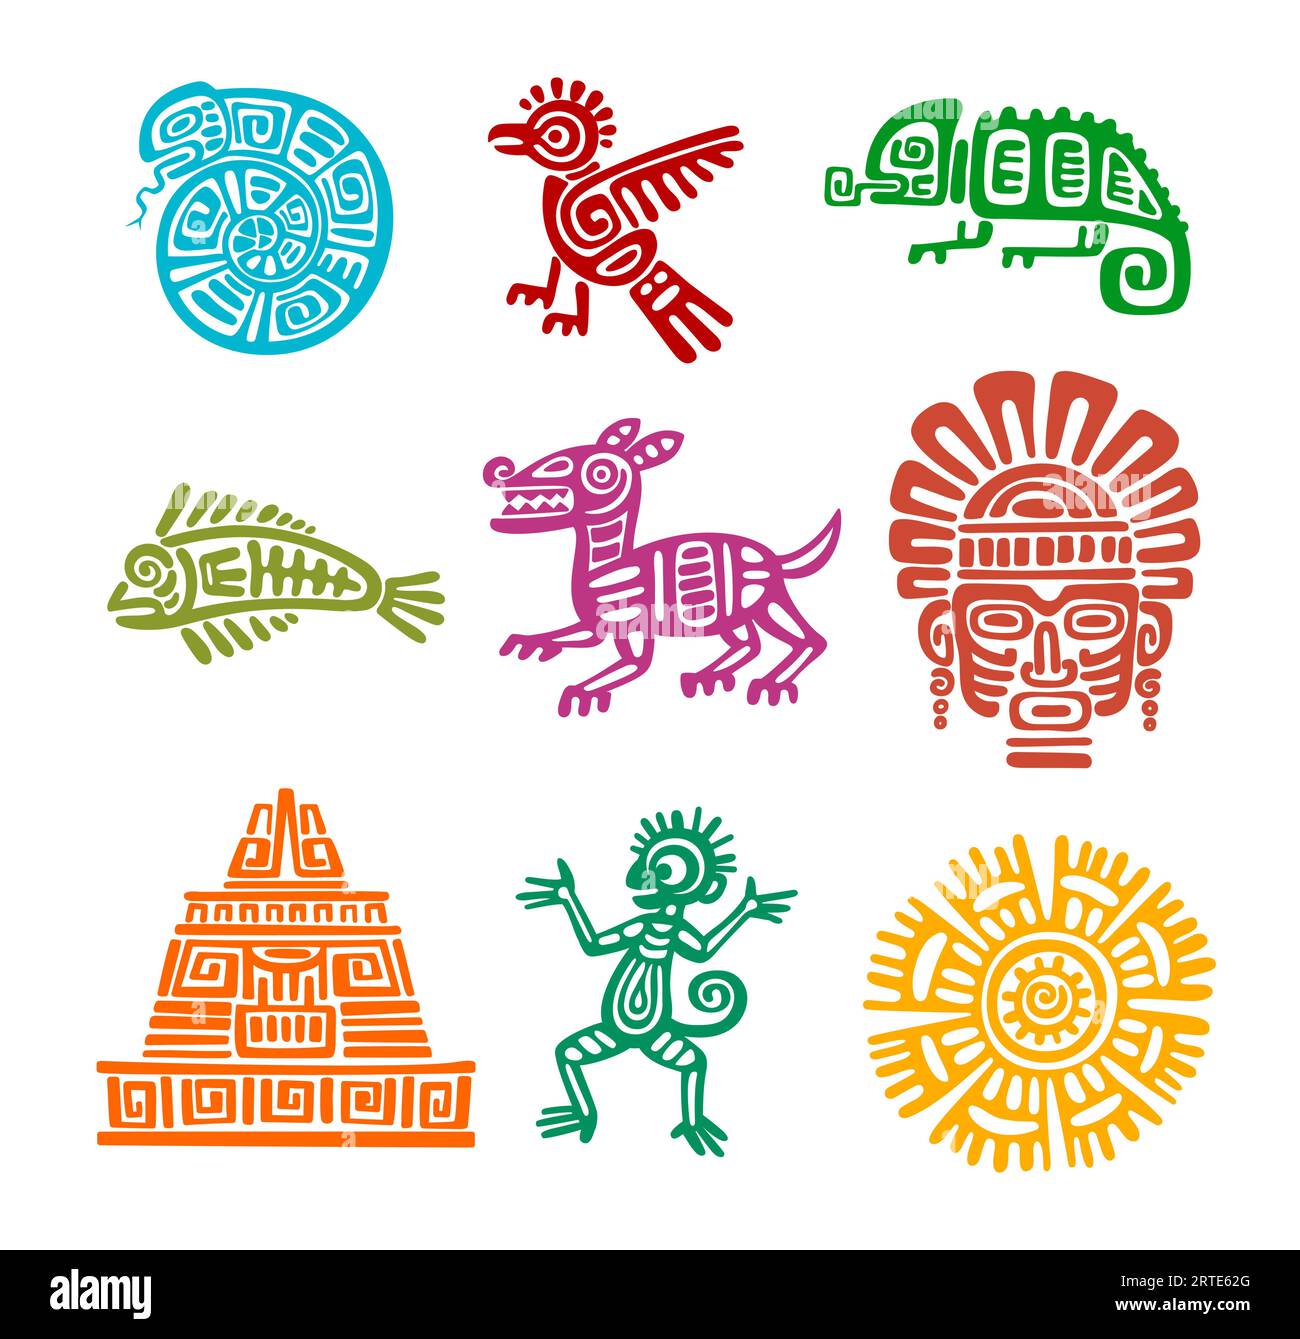 Totem aztèque maya de serpent, oiseau aigle, poisson et caméléon, singe, chien et masque tiki, soleil, pyramide Incas. L'histoire de l'Amérique latine ou du mexique, l'art traditionnel ou la civilisation maya vecteur de symboles anciens Illustration de Vecteur